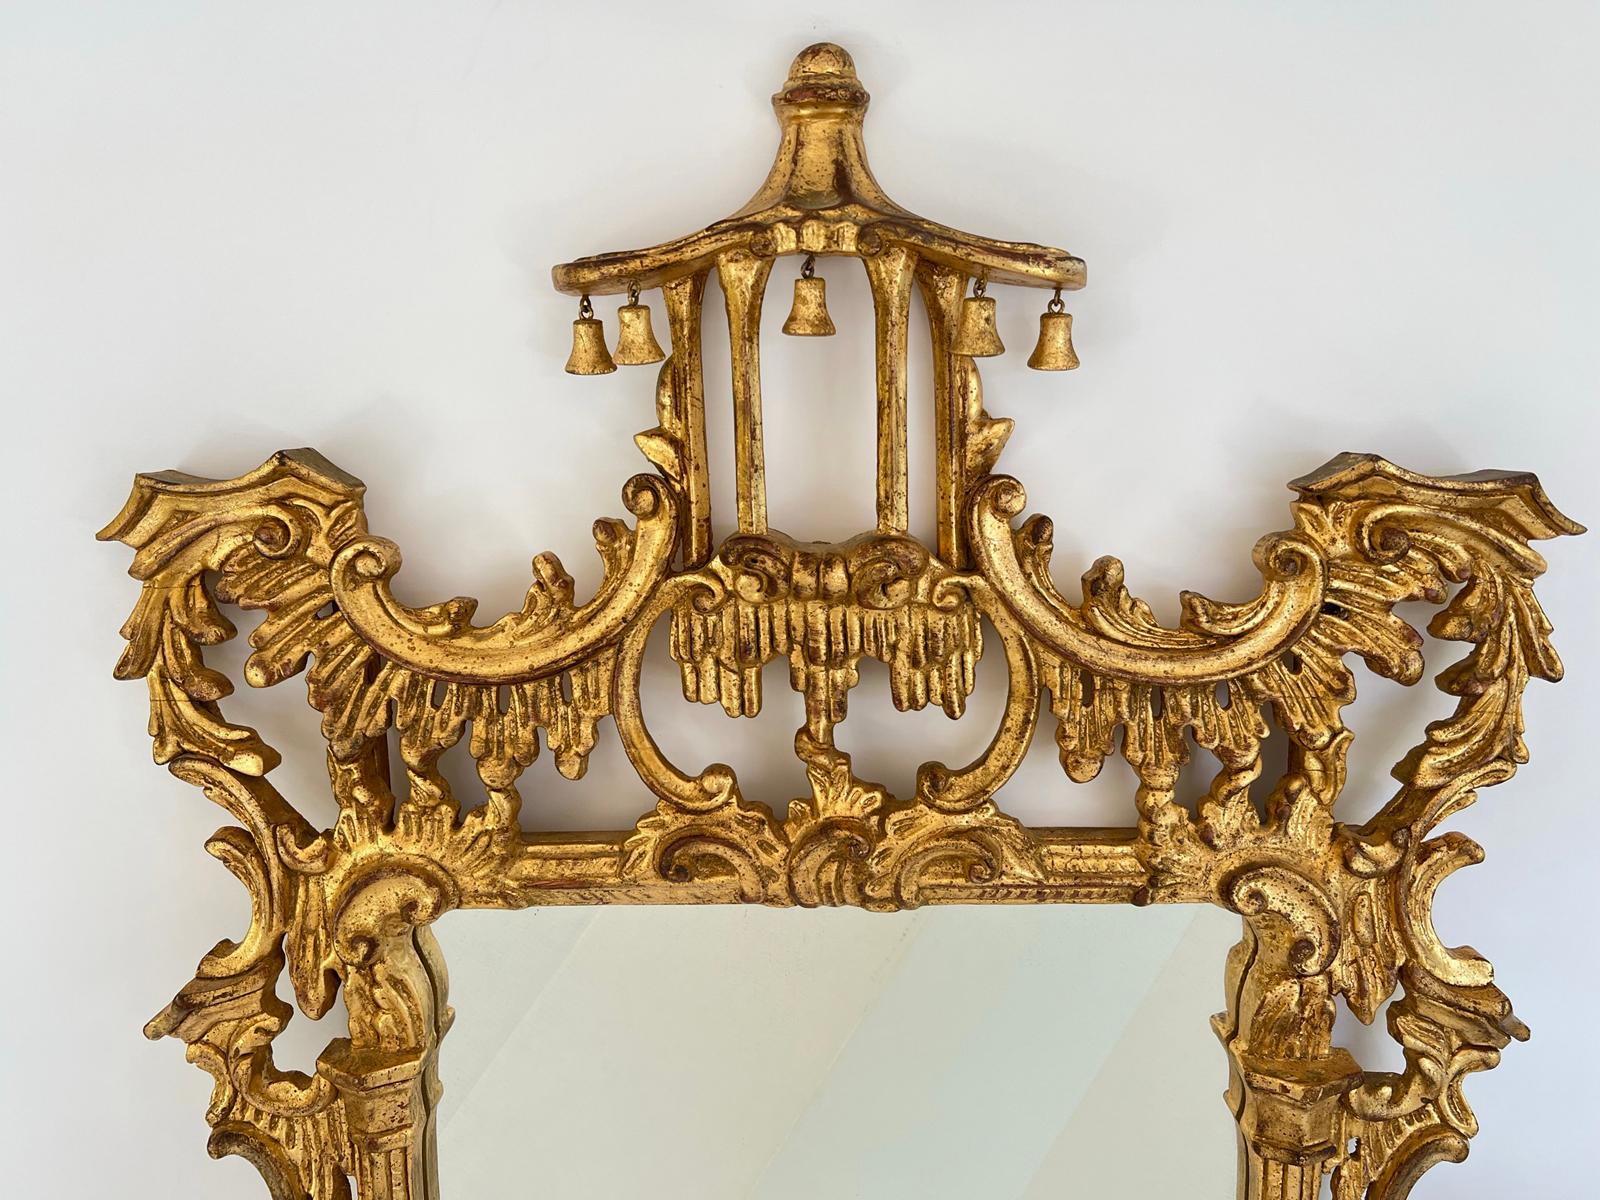 Miroir mural en bois doré sculpté, de style Brighton Pavilion, présentant un cadre élaboré, sculpté à la main et percé, surmonté d'un fronton en forme de pagode, et garni de clochettes en bois, son cadre étant entouré de volutes en forme de C et de